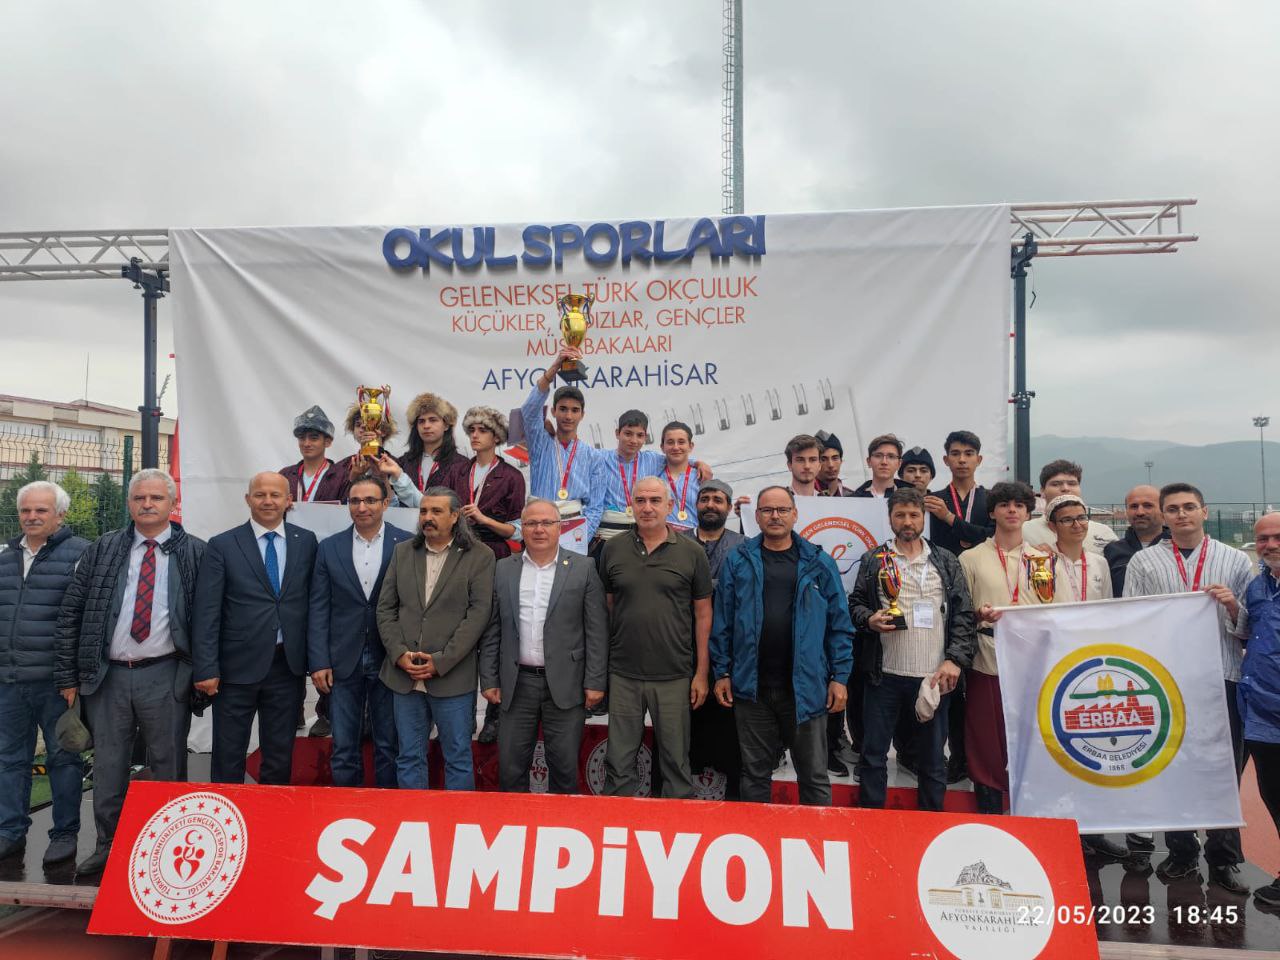 Ladik Akpınar Fen Lisesi okçulukta Türkiye şampiyonu oldu